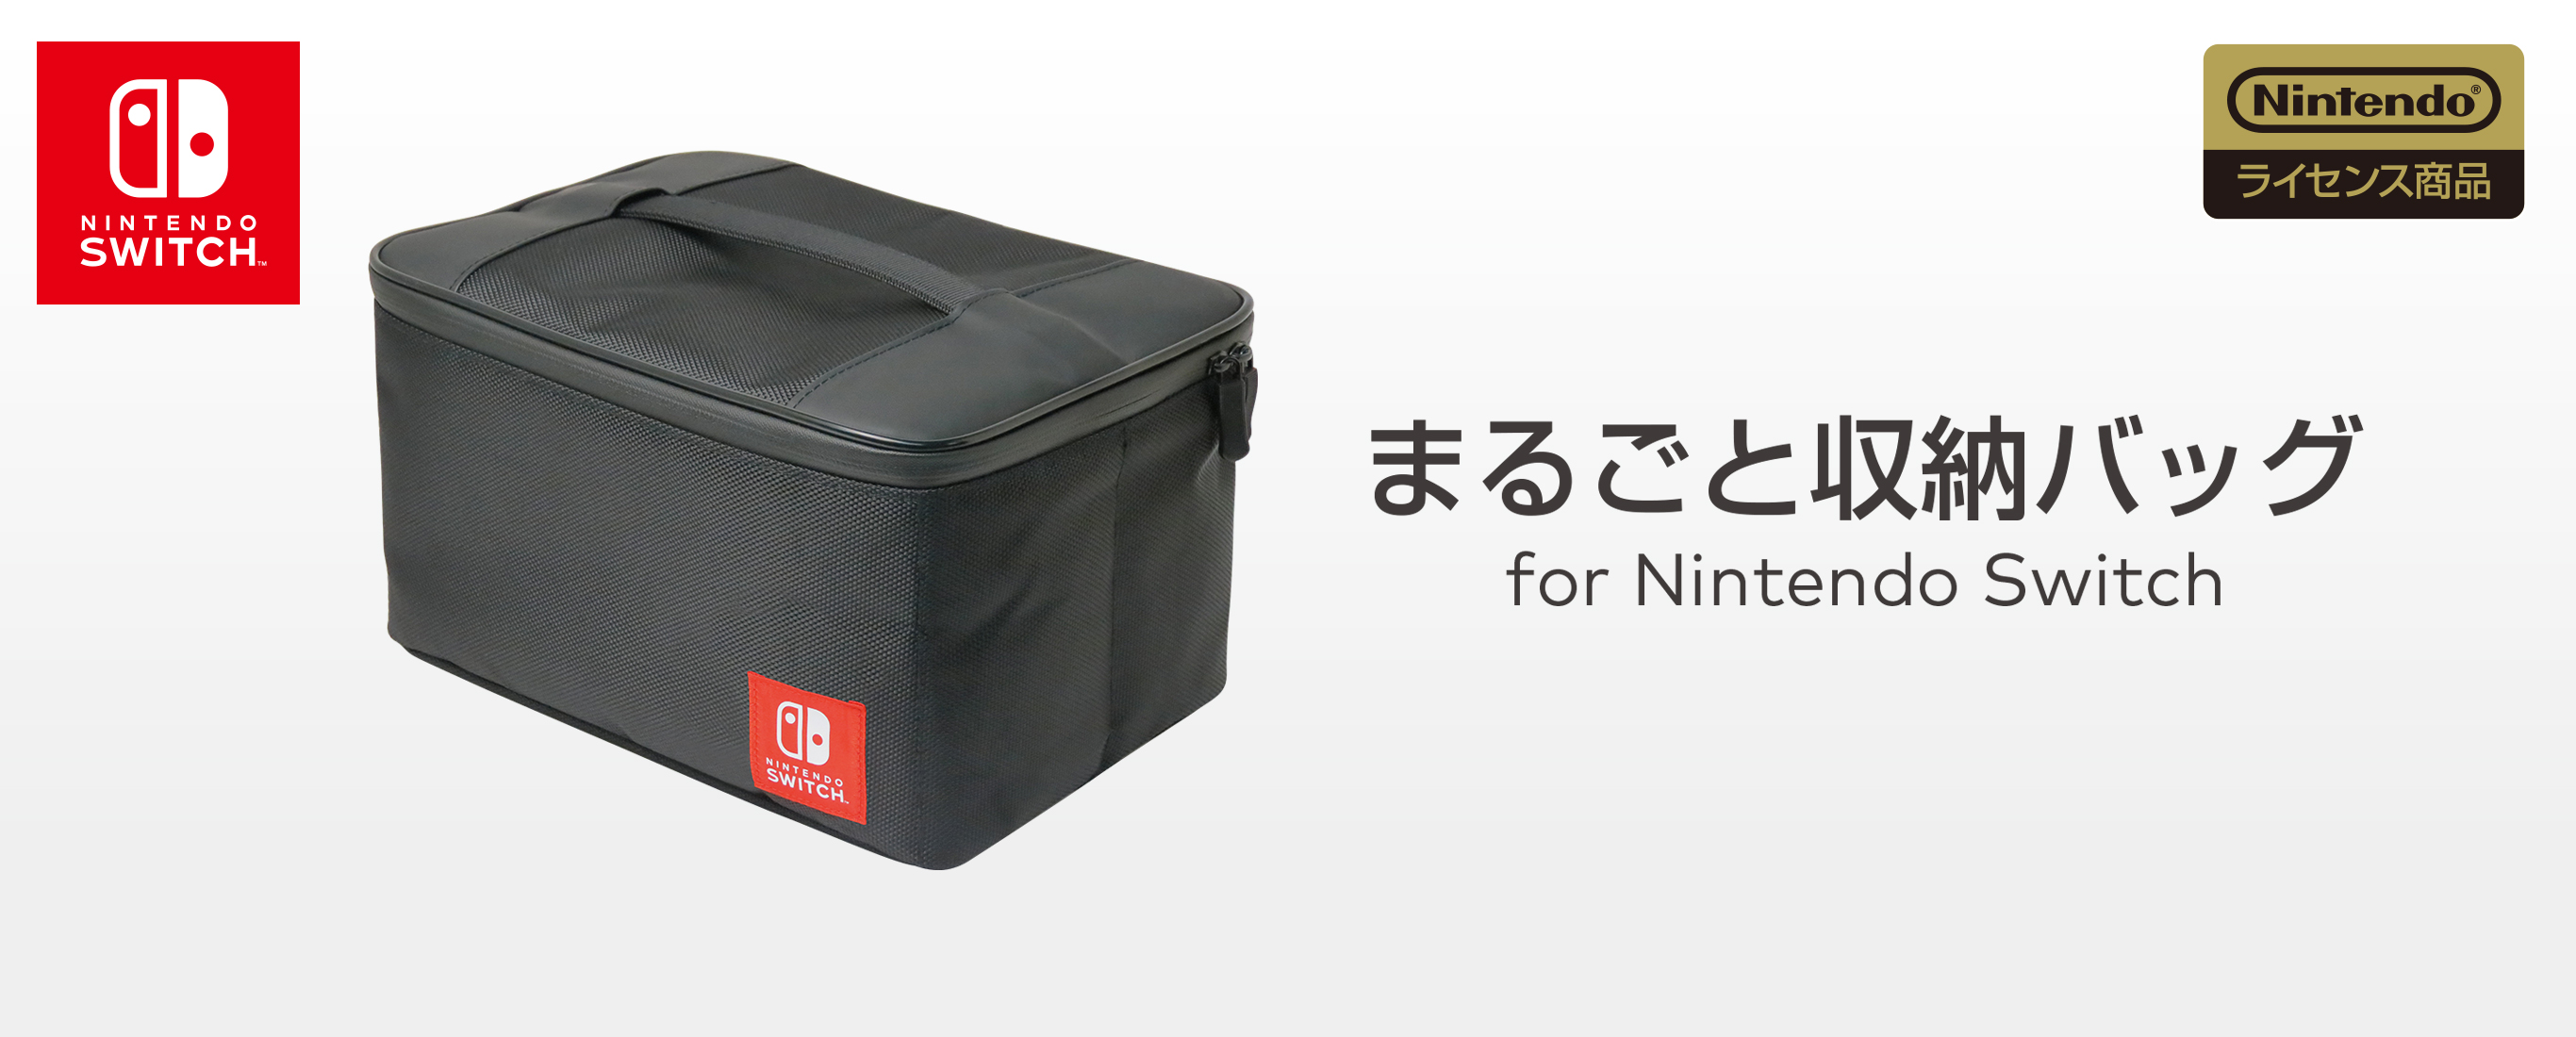 株式会社 Hori まるごと収納バッグ For Nintendo Switch